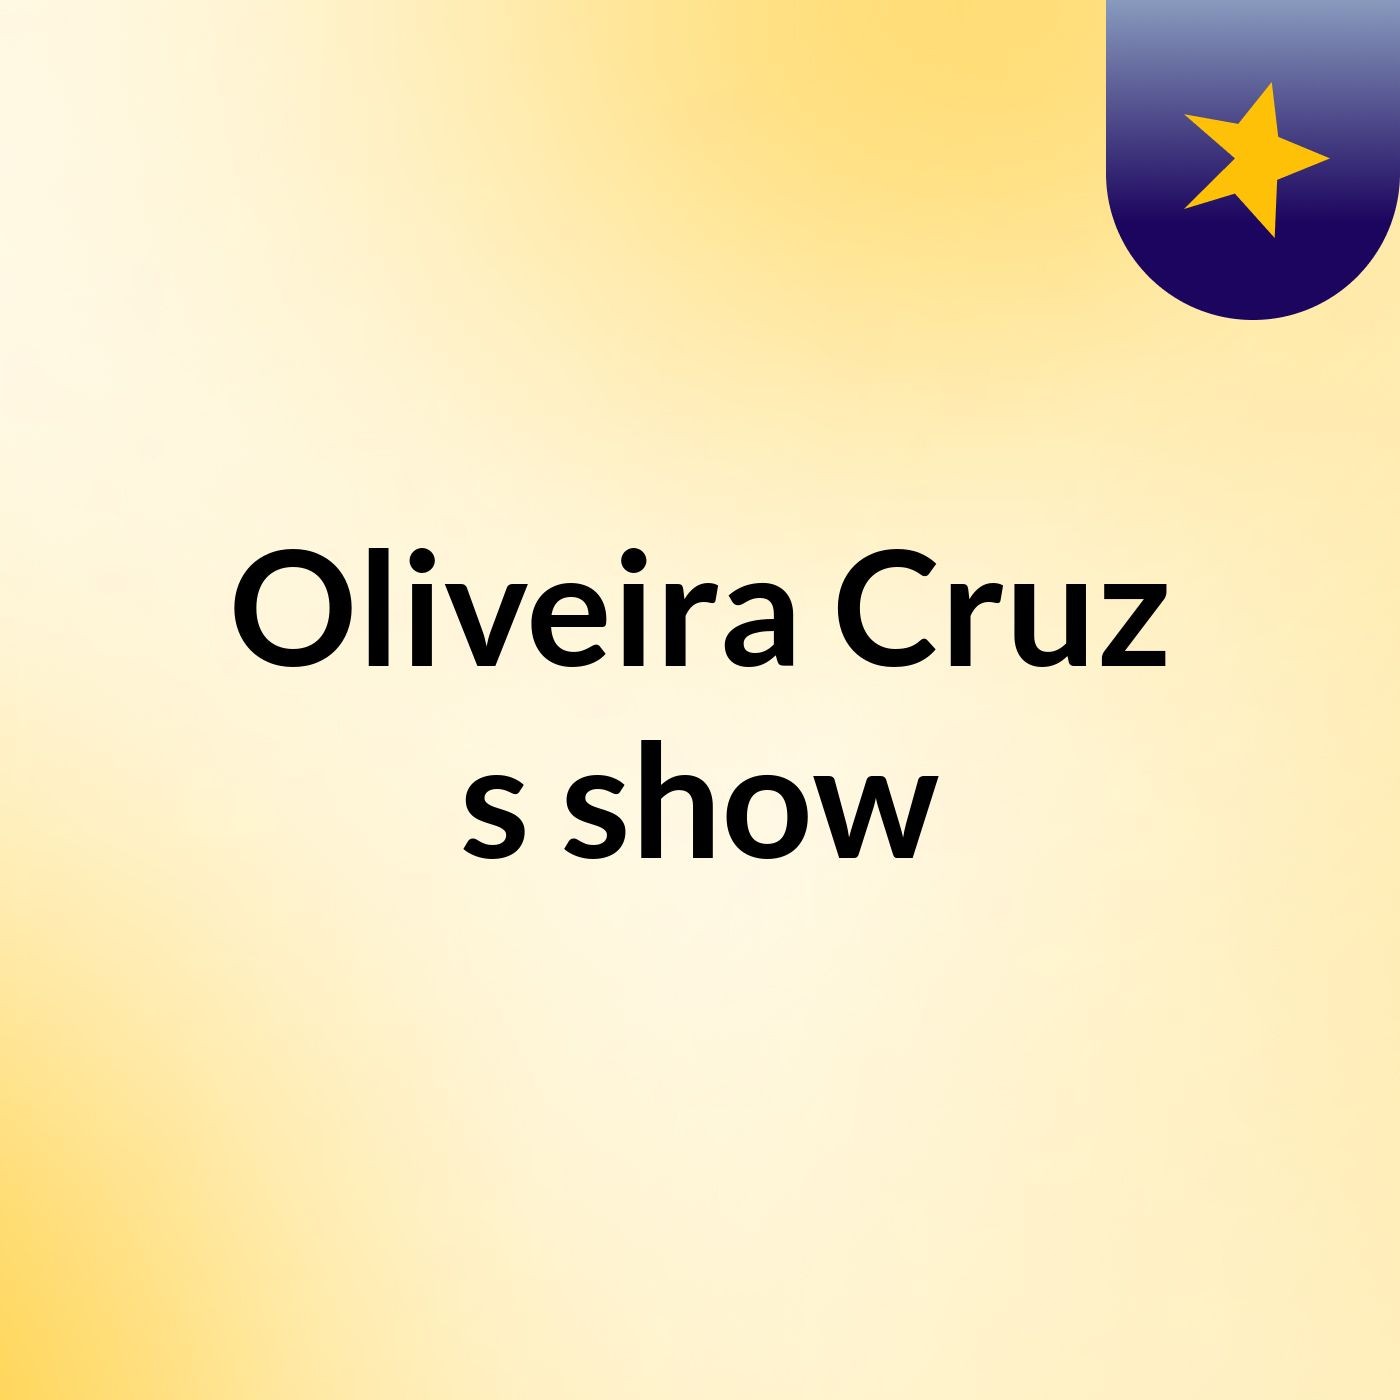 Oliveira Cruz's show